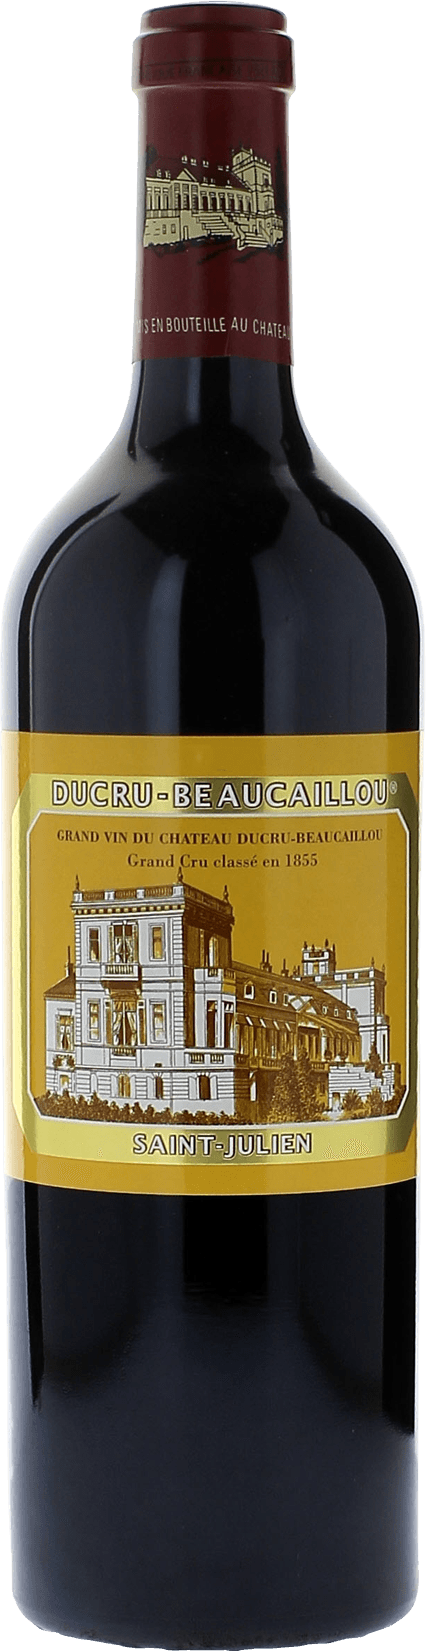 Ducru beaucaillou 1988 2me Grand cru class Saint-Julien, Bordeaux rouge